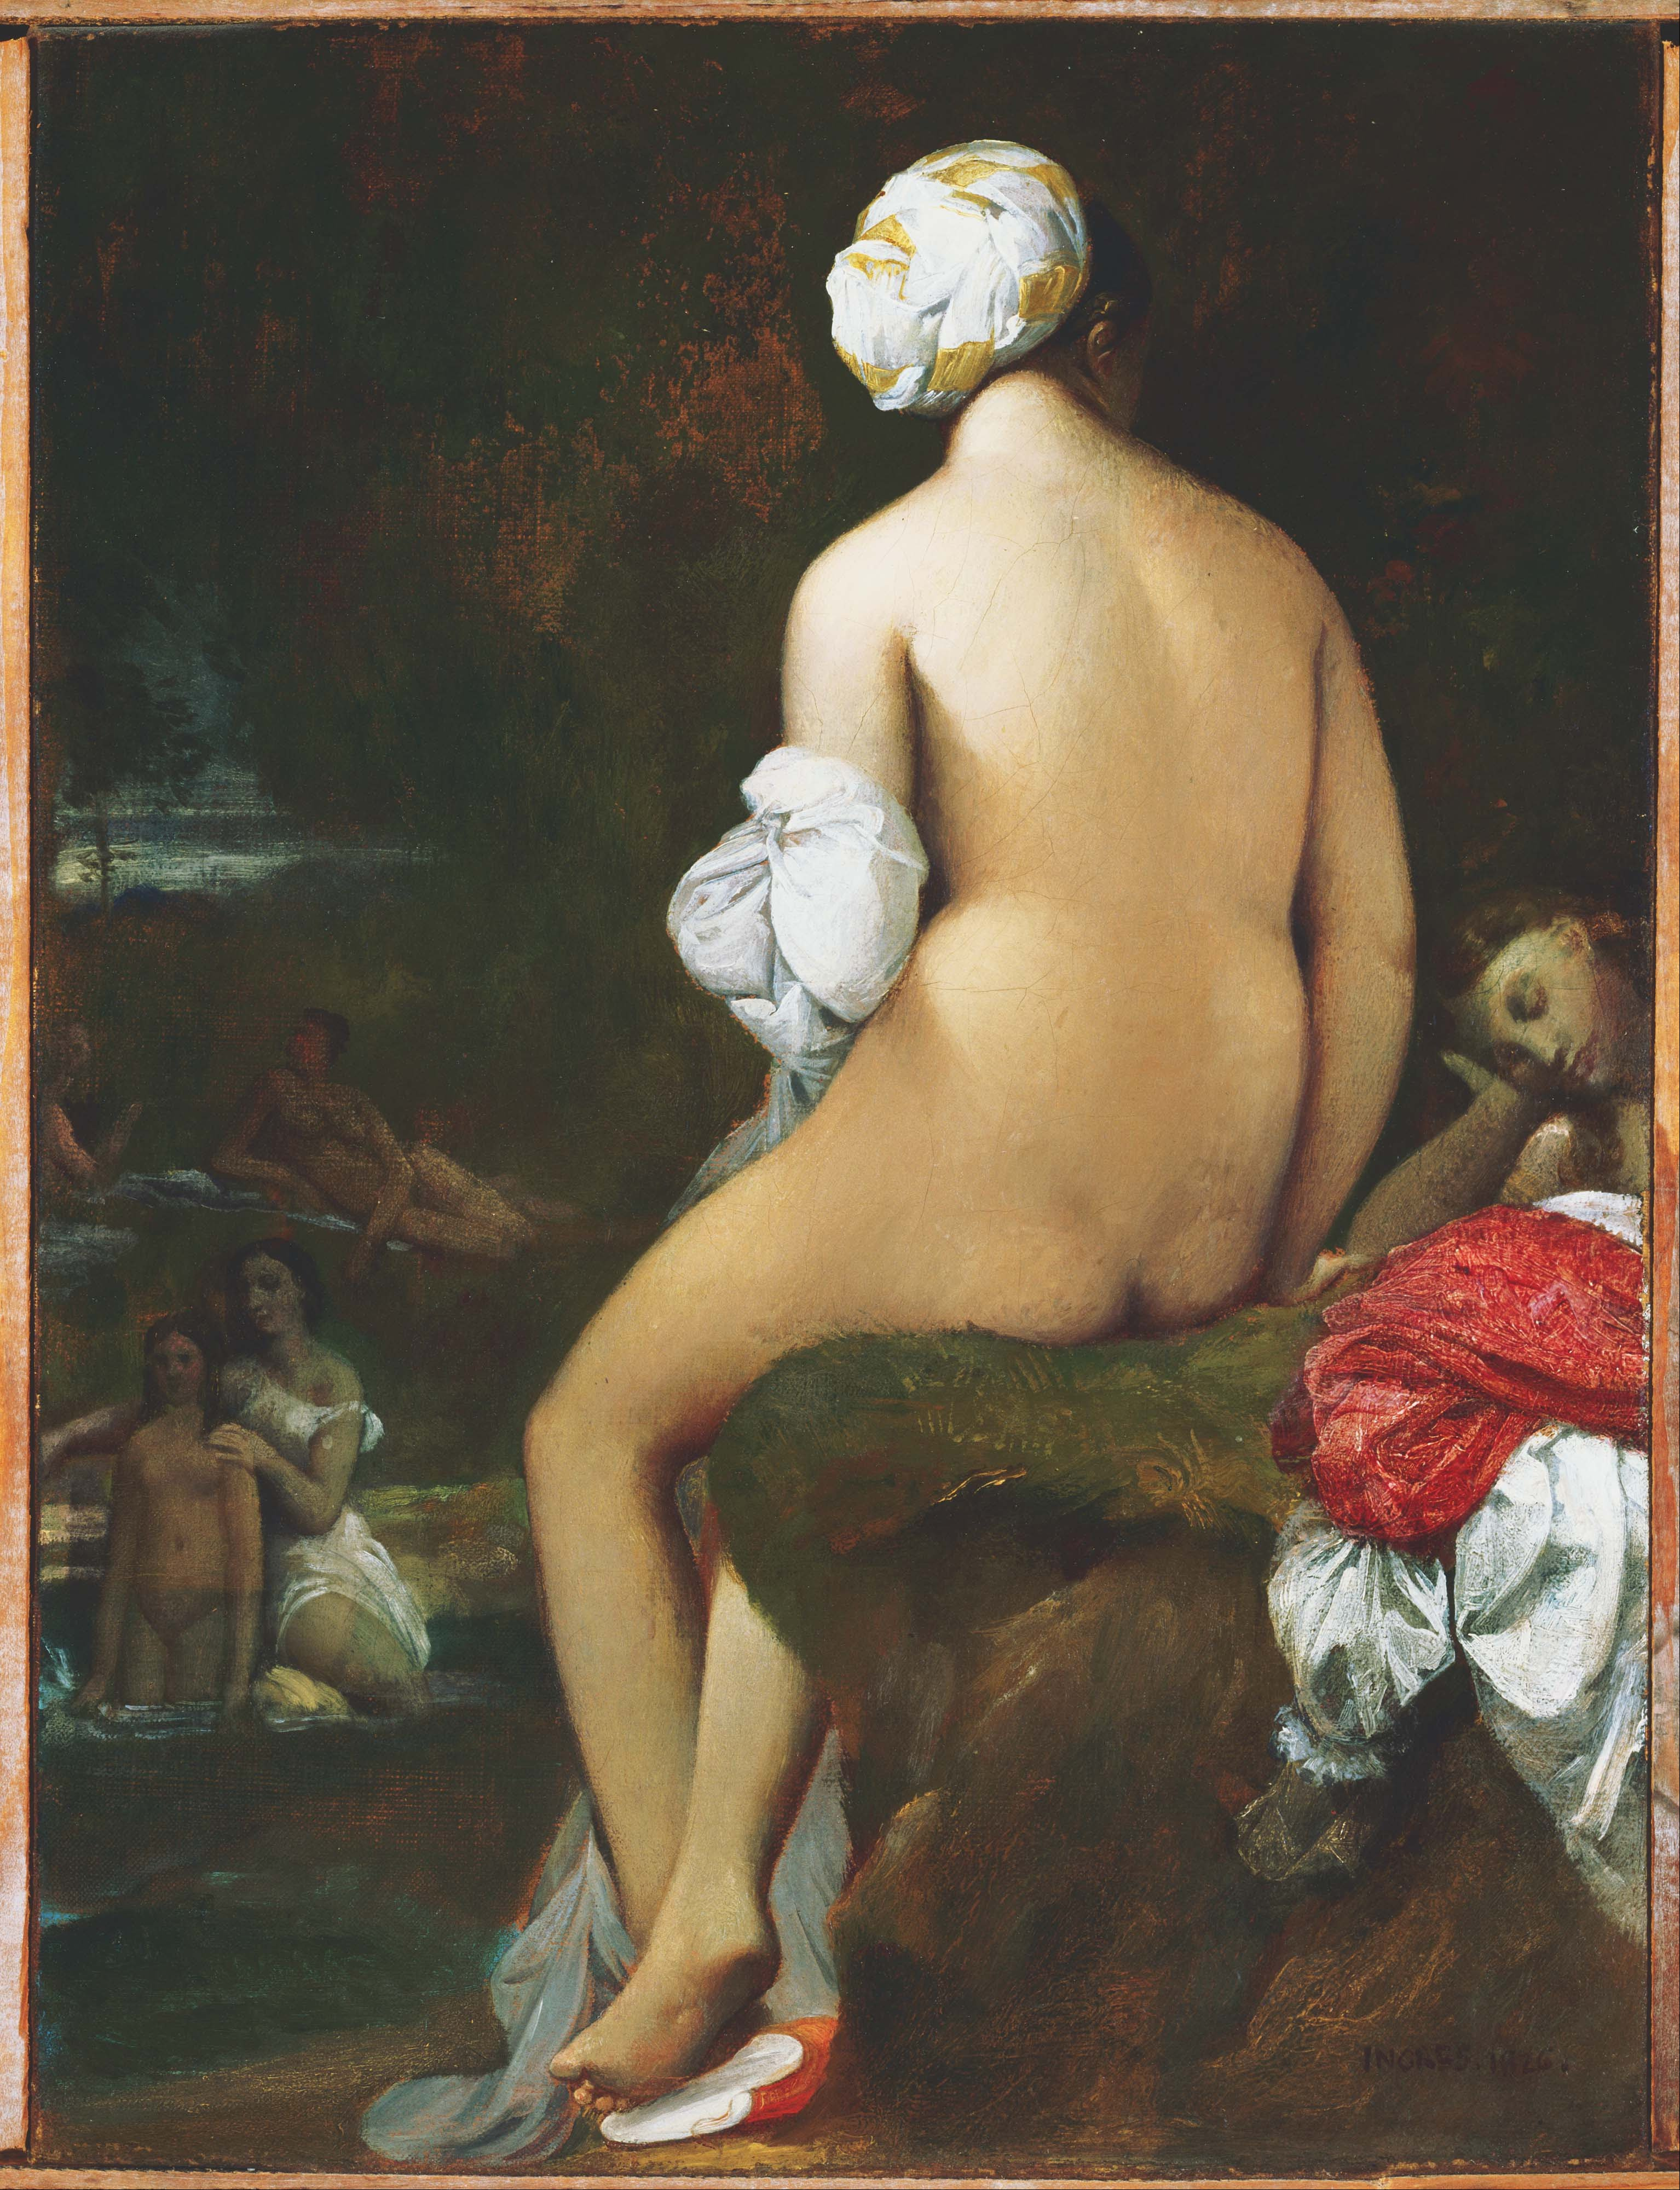 小浴者 by 让·奥古斯特·多米尼克· 安格尔 - 1826 - 9.88 x 12.88 in 